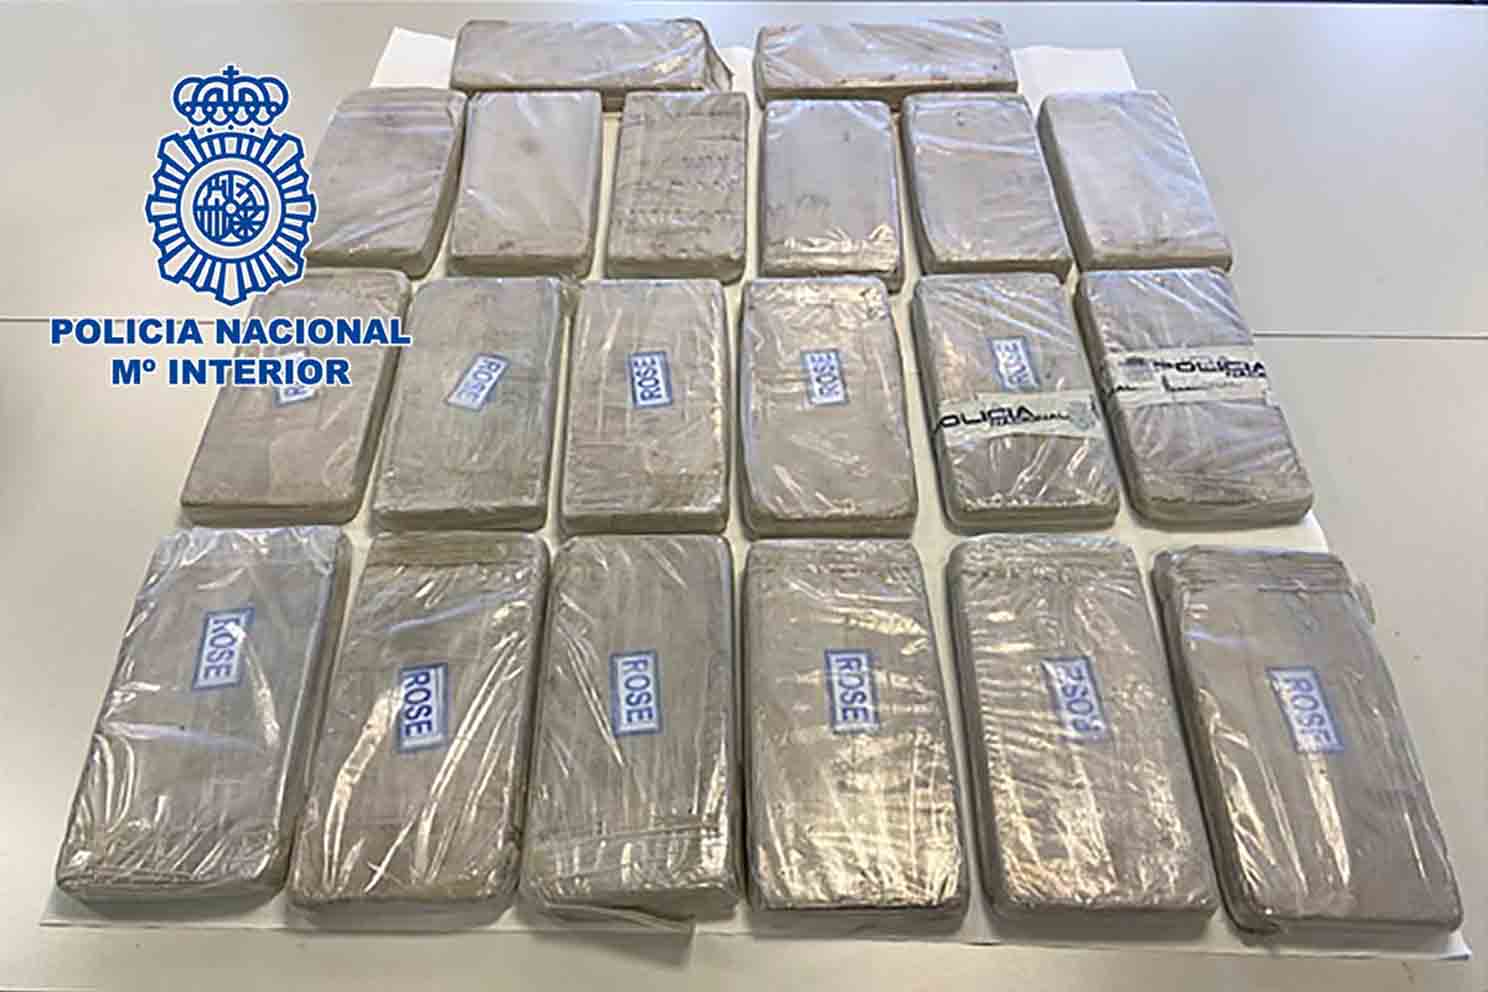 Agentes de la Policía Nacional, en el marco de la operación “Nessun Dorma” coordinada por el Juzgado de Instrucción número 1 de Alcalá de Henares,